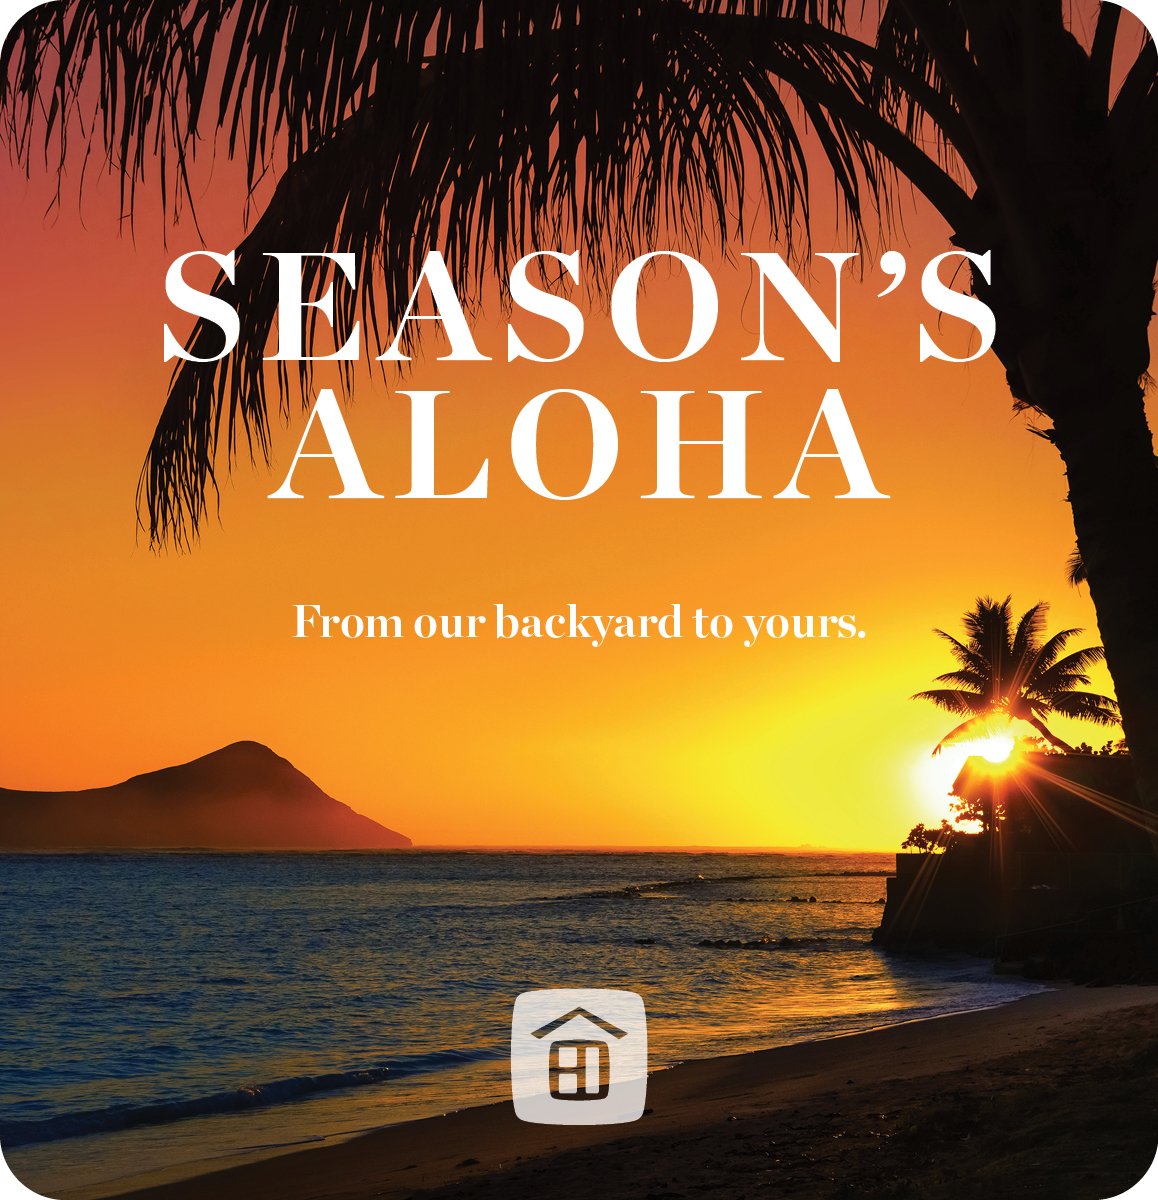 Season's Aloha - Sunset